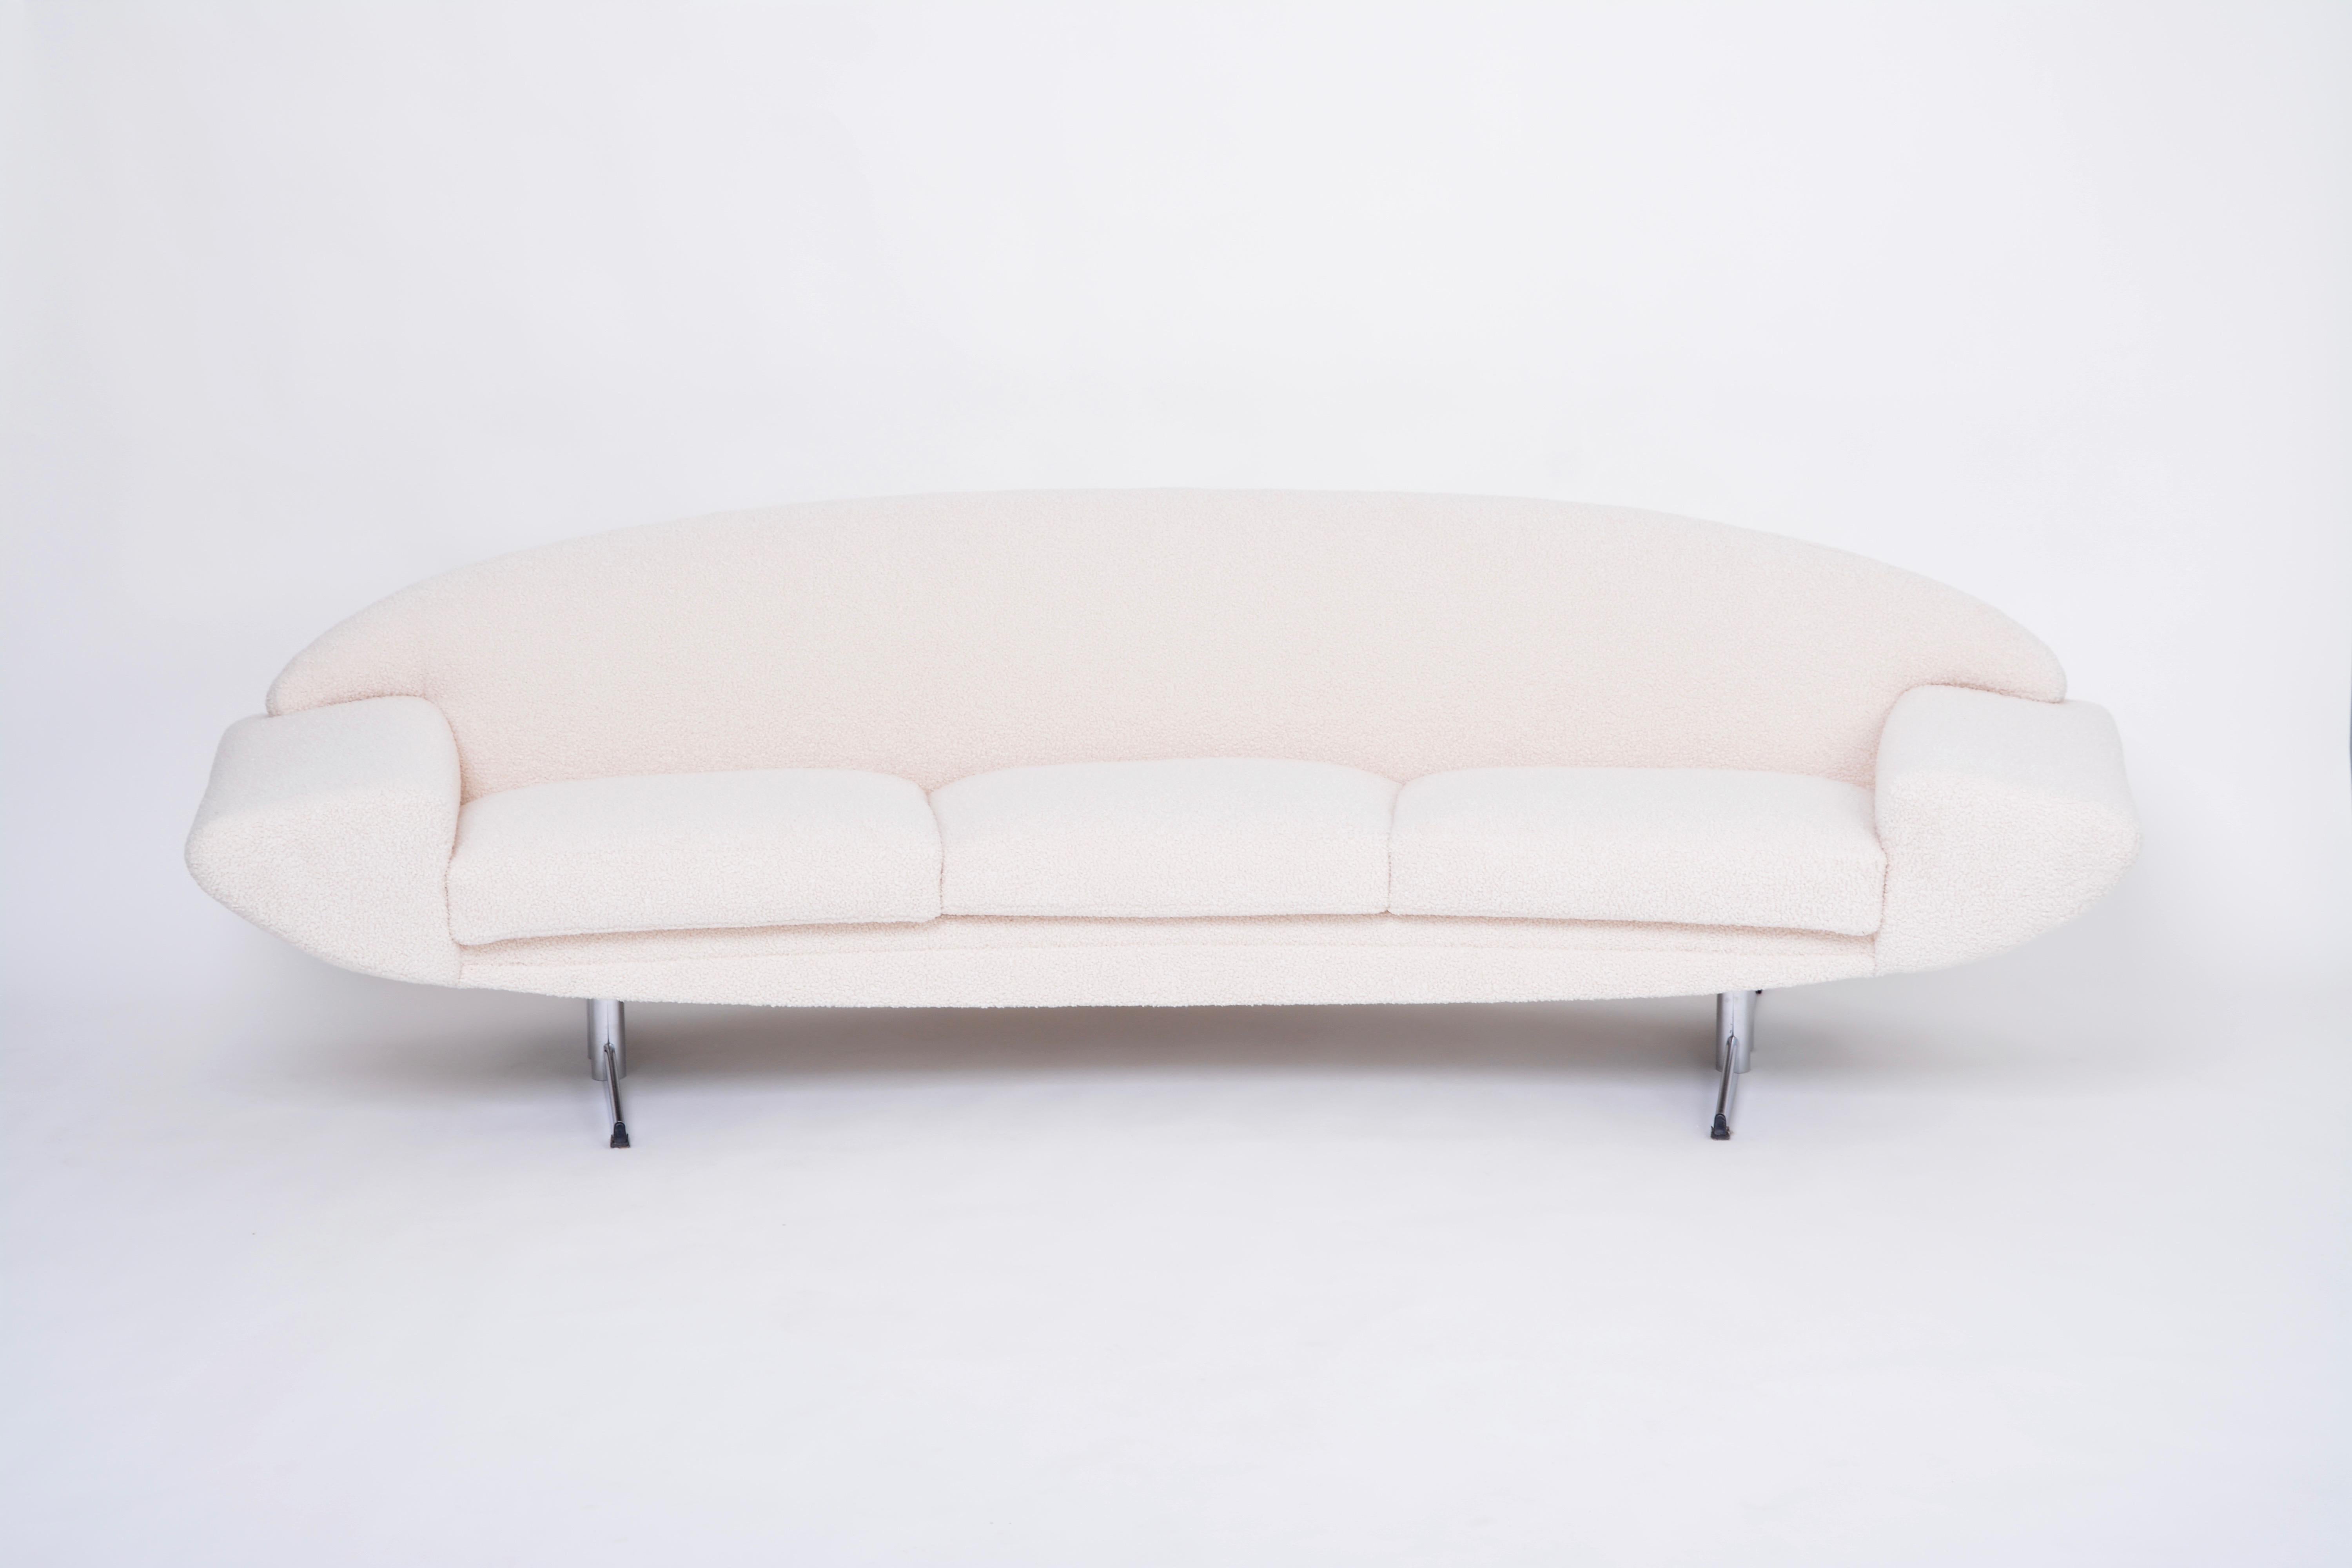 Dies ist eine absolute Ikone des skandinavischen Midcentury Modern Designs. Johannes Andersen hat die Capri-Serie entworfen, die aus einem Sofa, Sesseln und einem Couchtisch besteht und von der schwedischen Firma Trensum hergestellt wird. 
Besonders